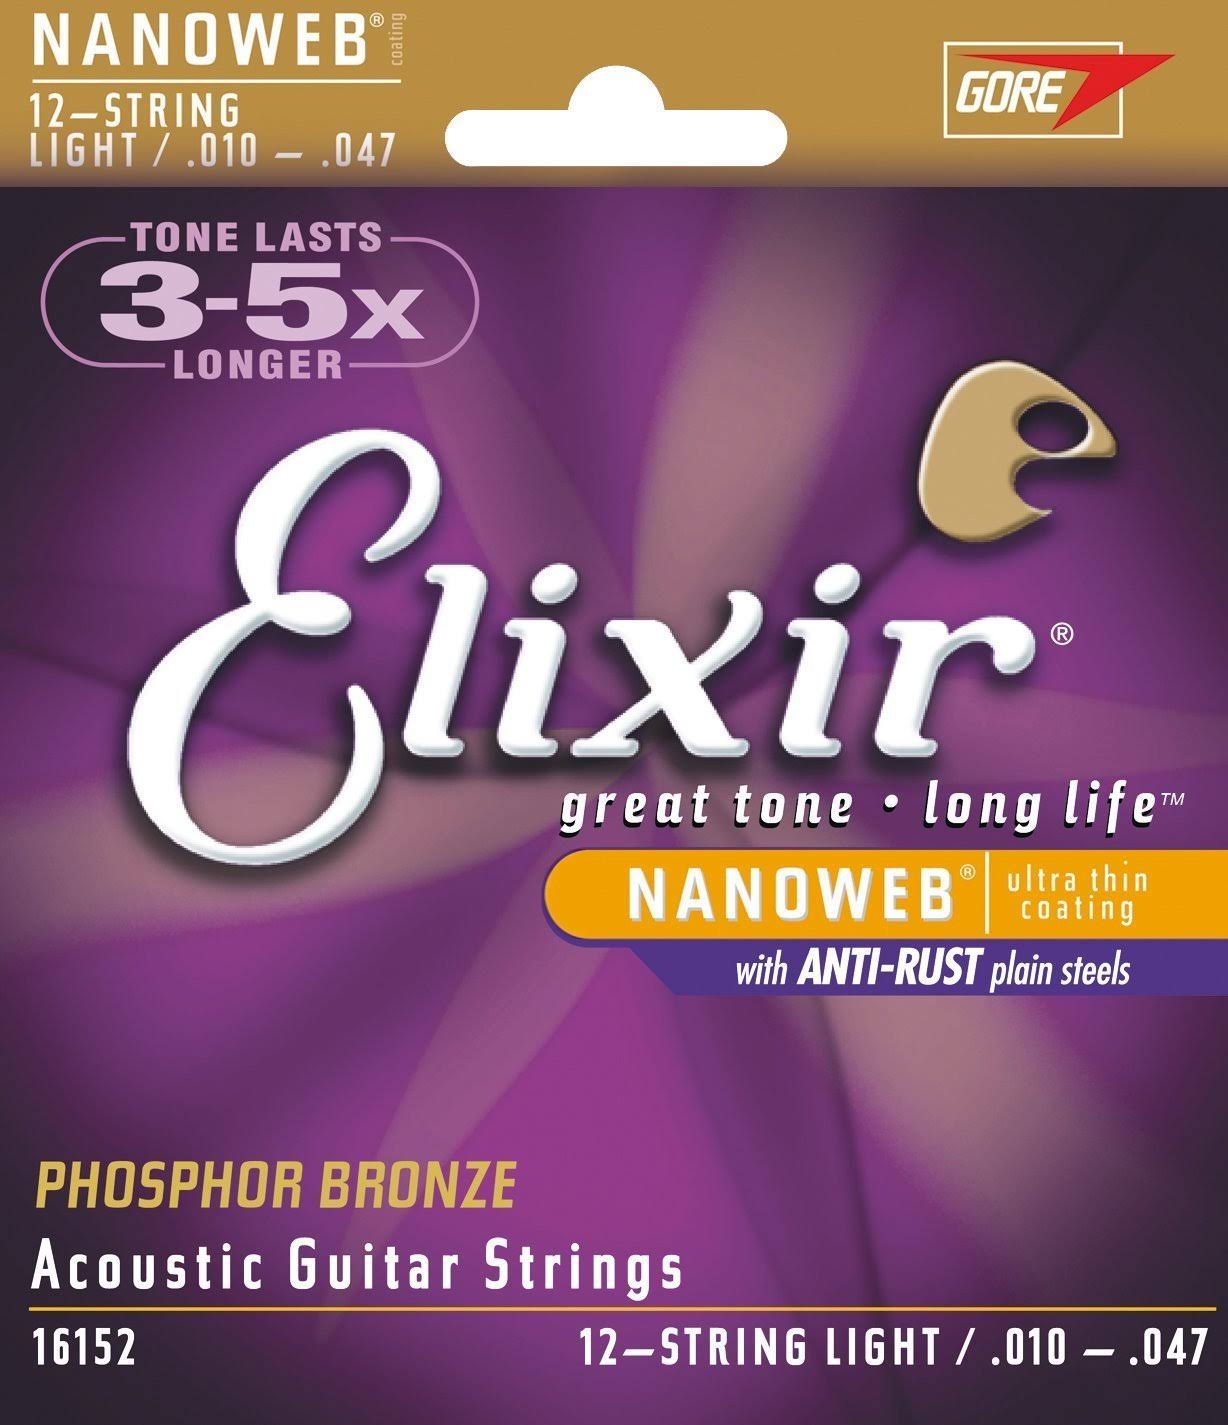 Elixir Strings Phosphor Bronze Acoustic Guitar Strings - 12 String